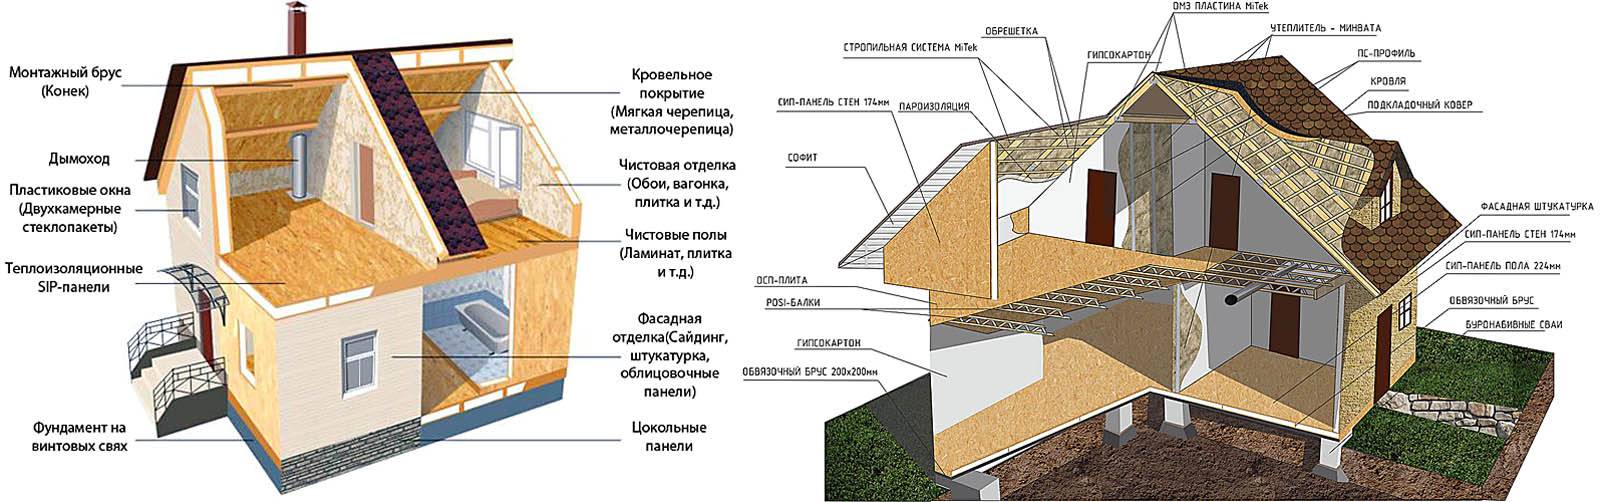 Сэндвич-панели: плюсы и минусы, виды, использование, стоимость | 5domov.ru - статьи о строительстве, ремонте, отделке домов и квартир